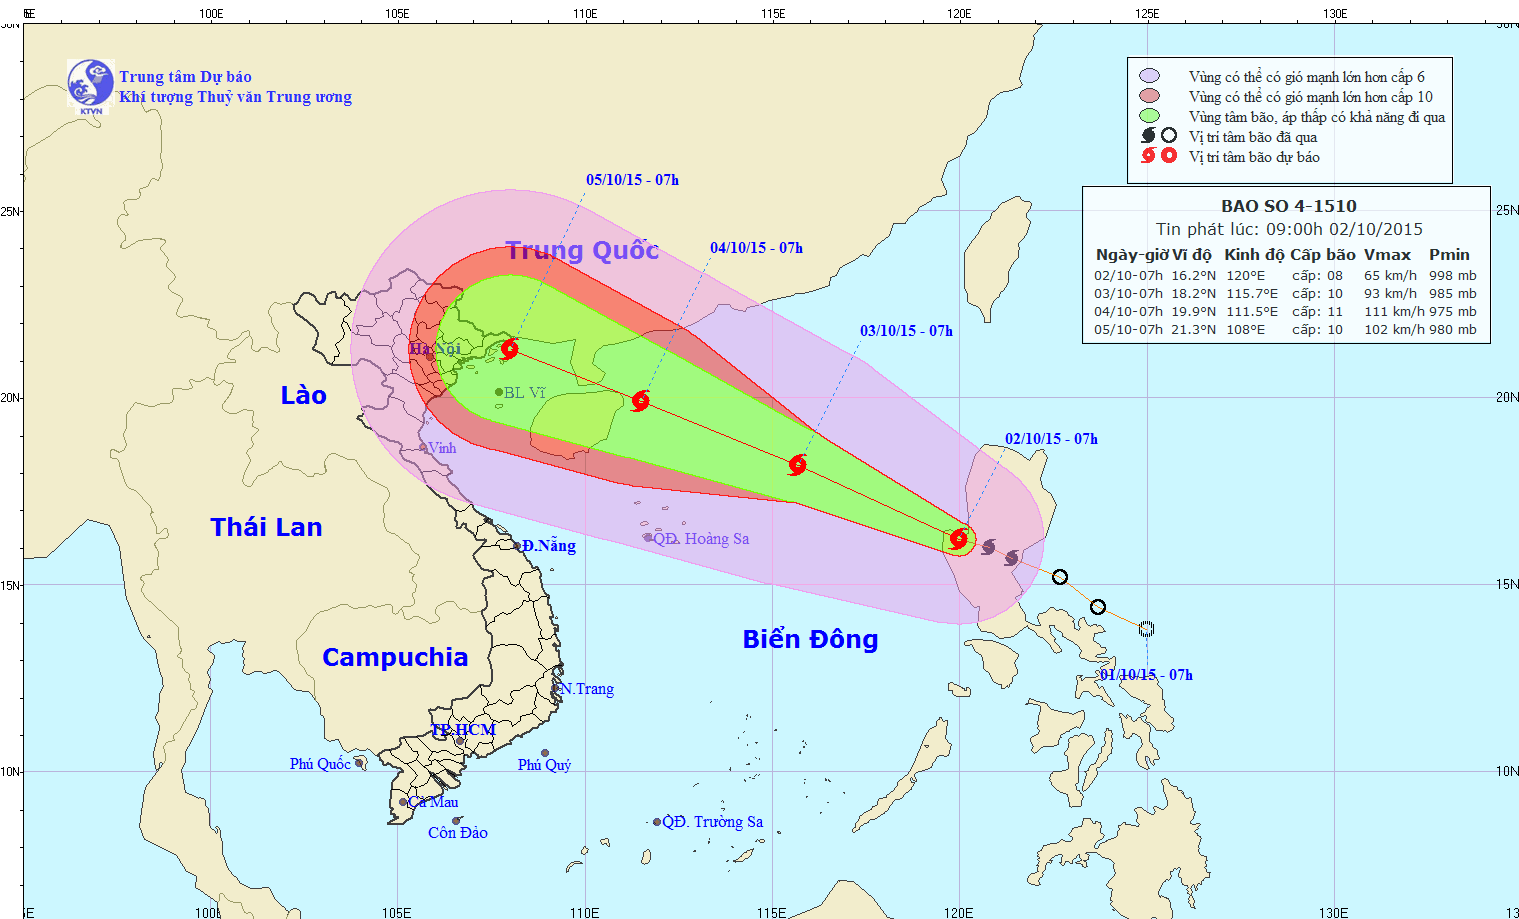 Tin bão trên biển Đông (Cơn bão số 4) lúc 10h00 ngày 02/10/2015